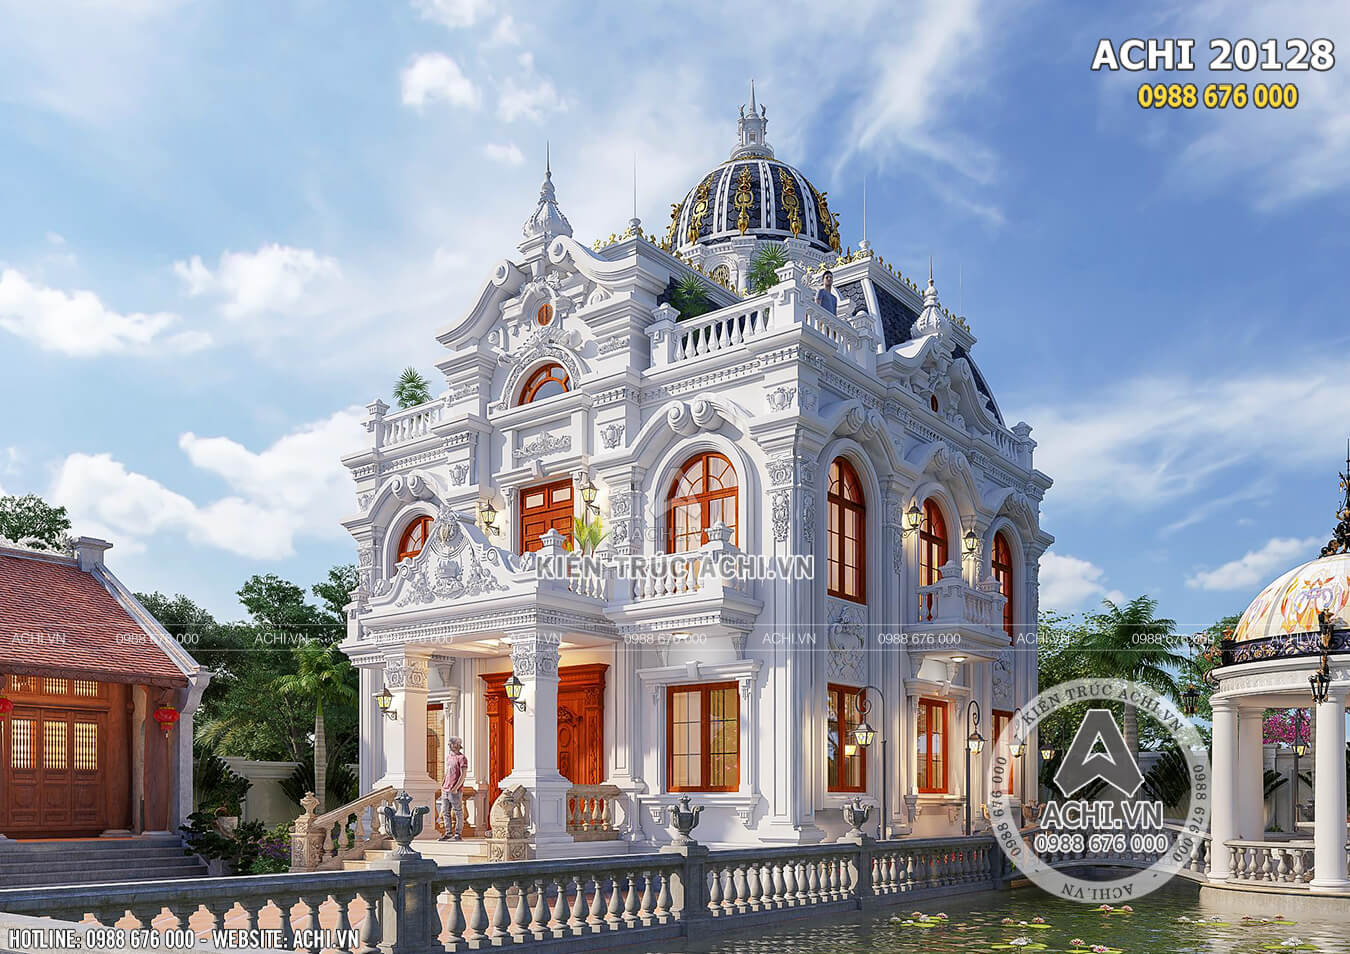 Mẫu biệt thự 2 tầng tân cổ điển đẹp tại Ninh Bình - ACHI 20128